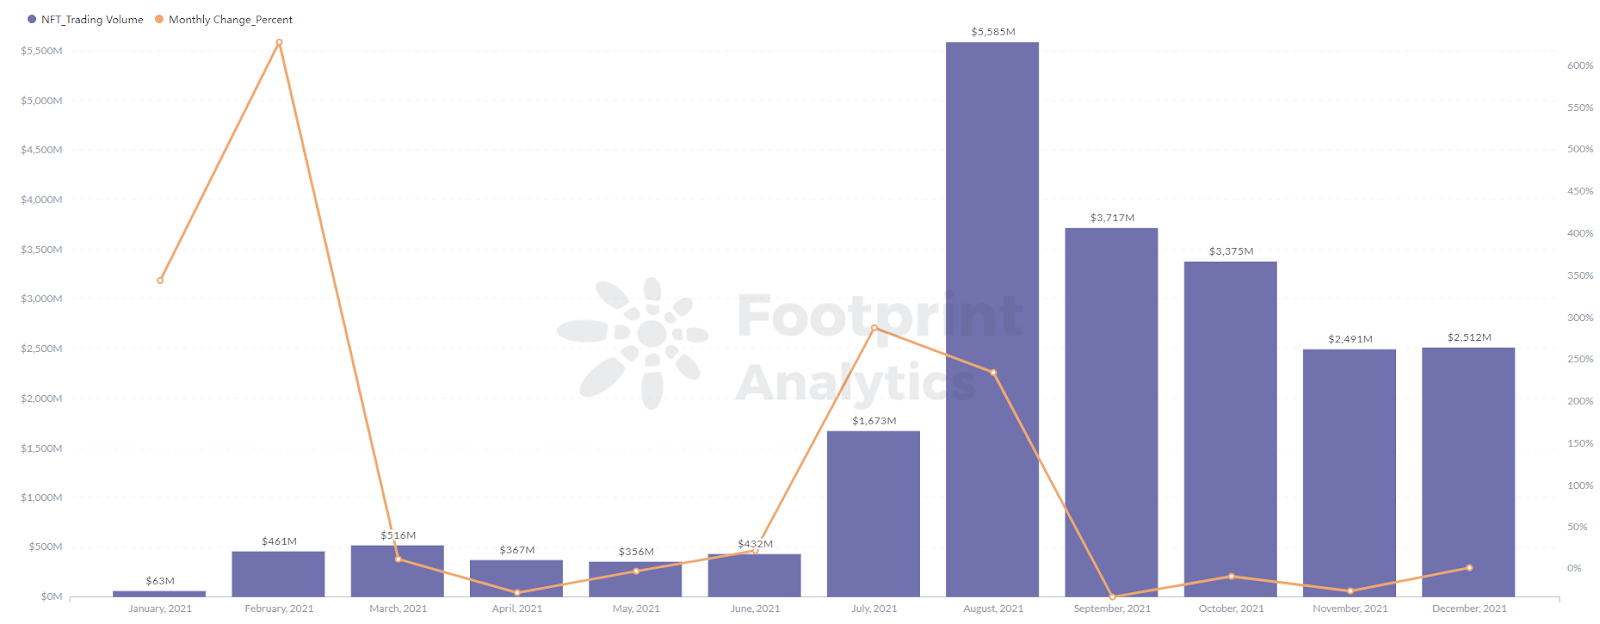 Footprint Analytics: el volumen de negociación de NFT Projects alcanzó un máximo de 5586 millones en agosto